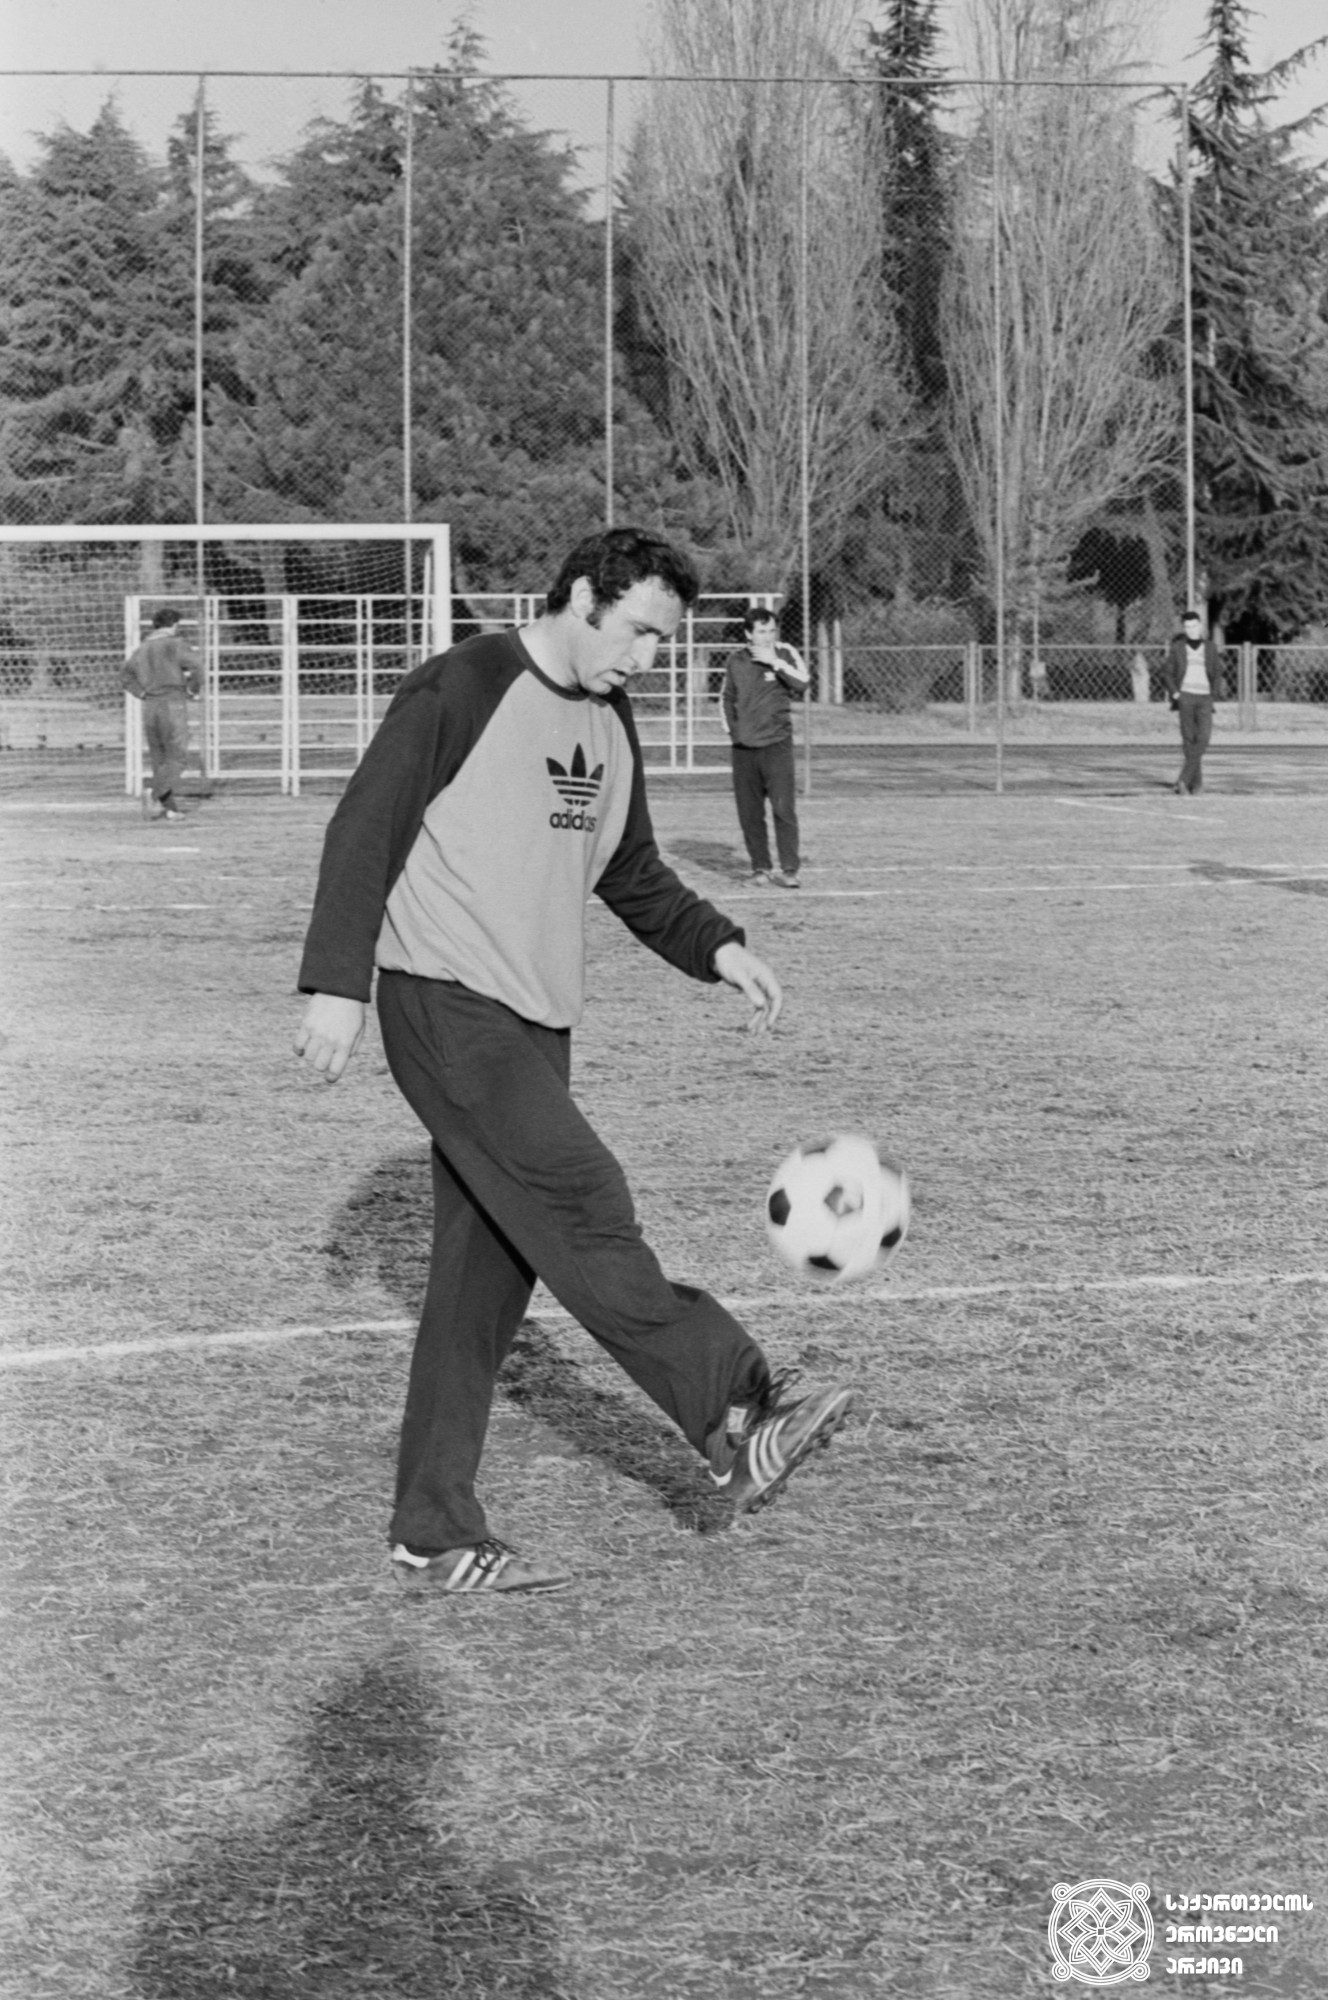 თენგიზ სულაქველიძე. <br>
ირაკლი ჭოხონელიძის ფოტო, 1983 წელი
XXII ოლიმპიური თამაშების მესამე პრიზიორი ფეხბურთში (1980 წელი, მოსკოვი). <br>
Tengiz Sulakvelidze. <br>
Photo by Irakli Chokhonelidze, 1983. <br>
Third-prize winner of the XXII Olympic Games in Football (1980, Moscow).